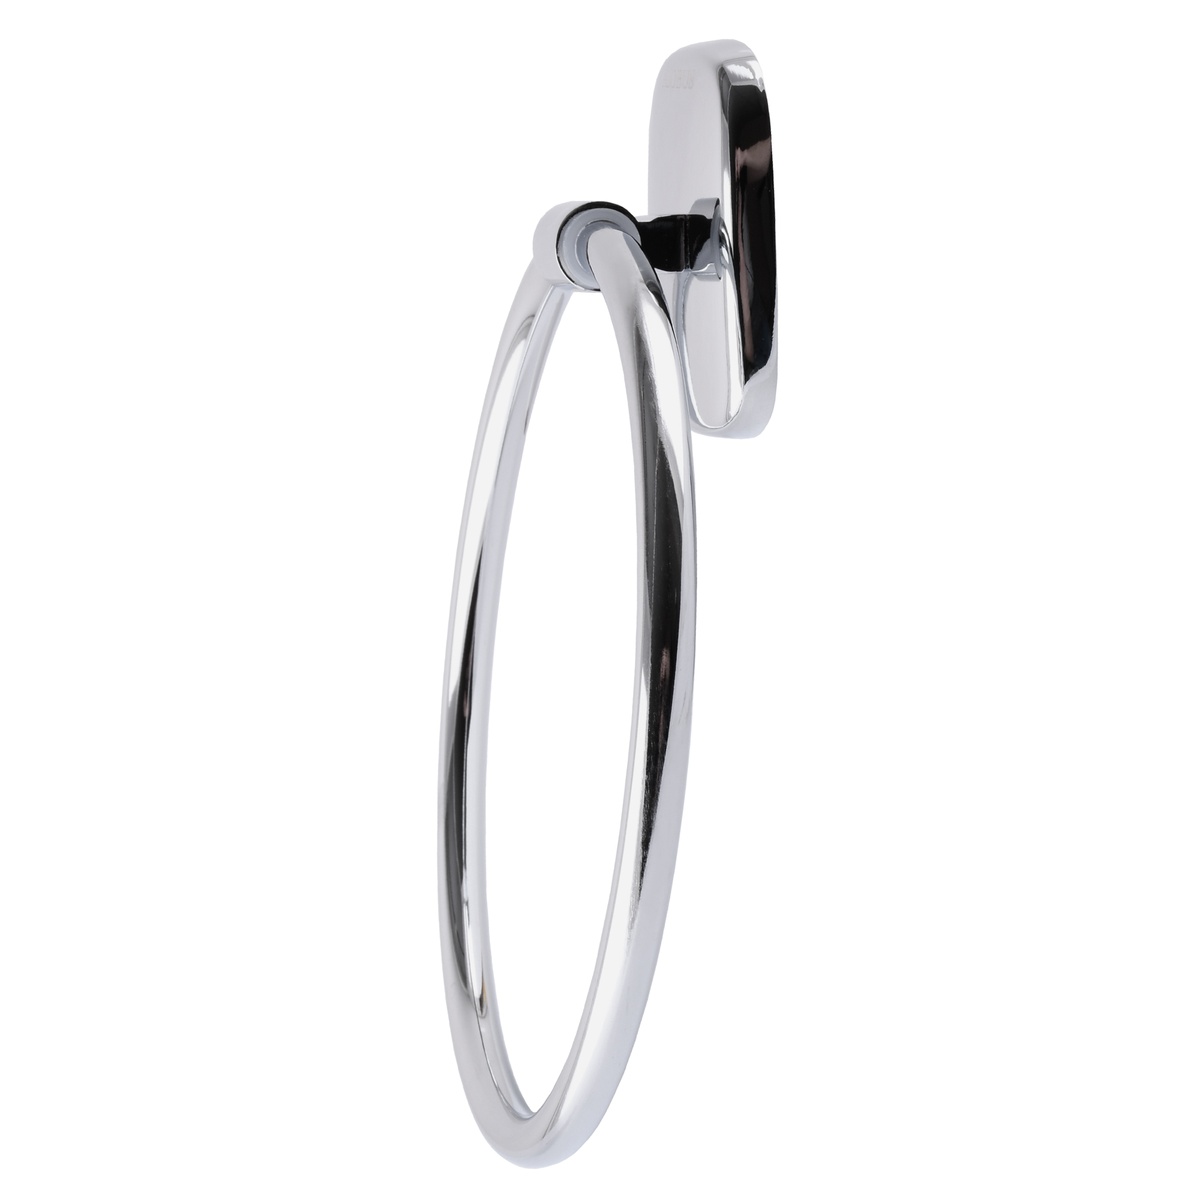 Держатель-кольцо для полотенец PERFECT SANITARY APPLIANCES RM 1003 000005204 155мм округлый металлический хром